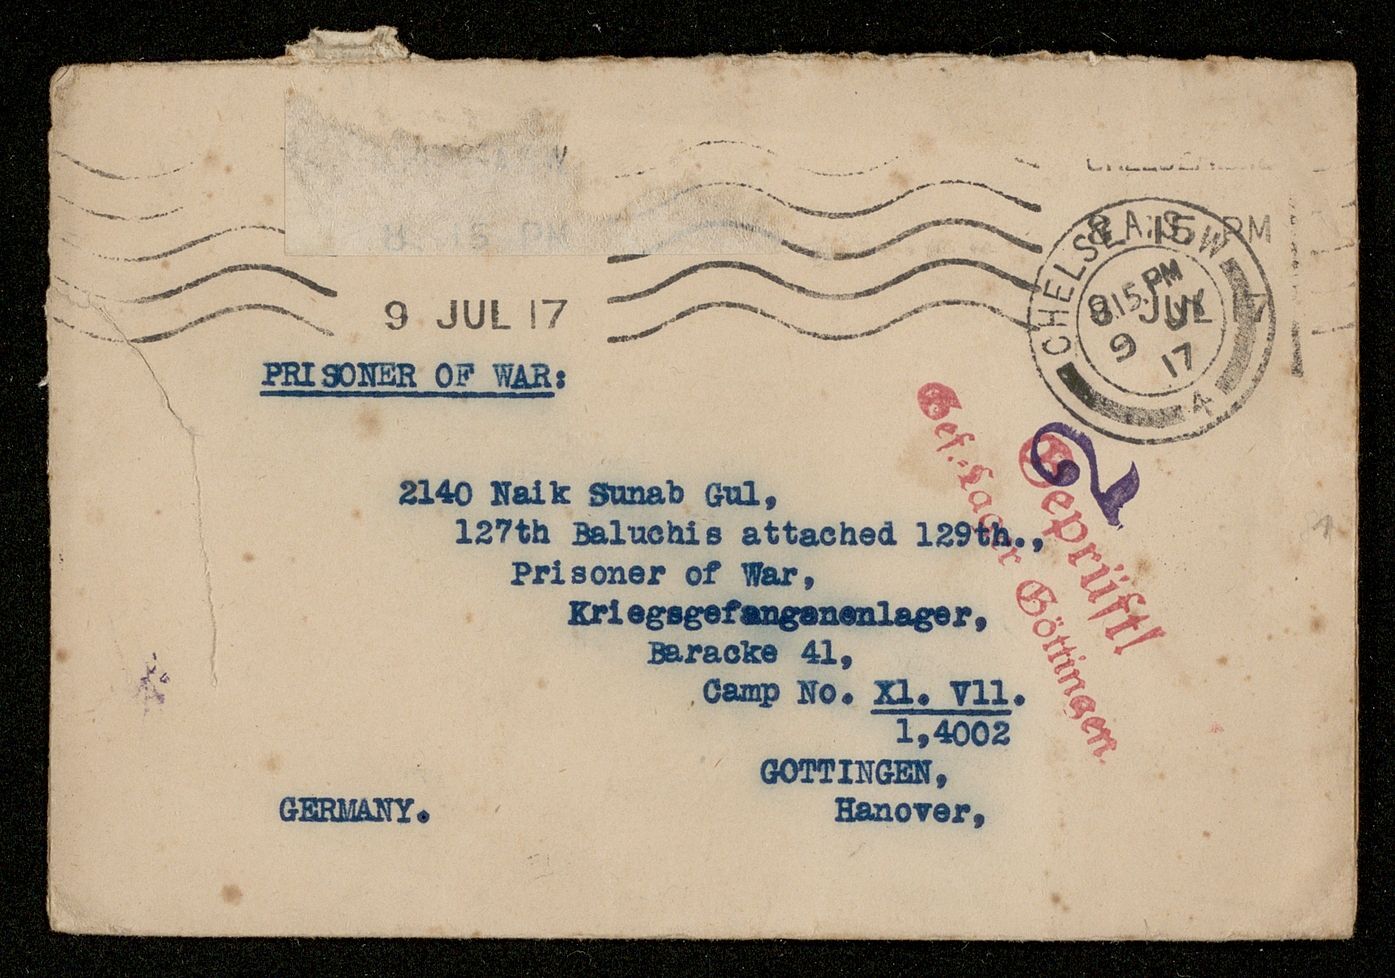 Umschlag eines Briefes an Sunab Gul, einer der Gefangenen, mit denen Friedrich Carl Andreas zusammenarbeitete, ca. 1917